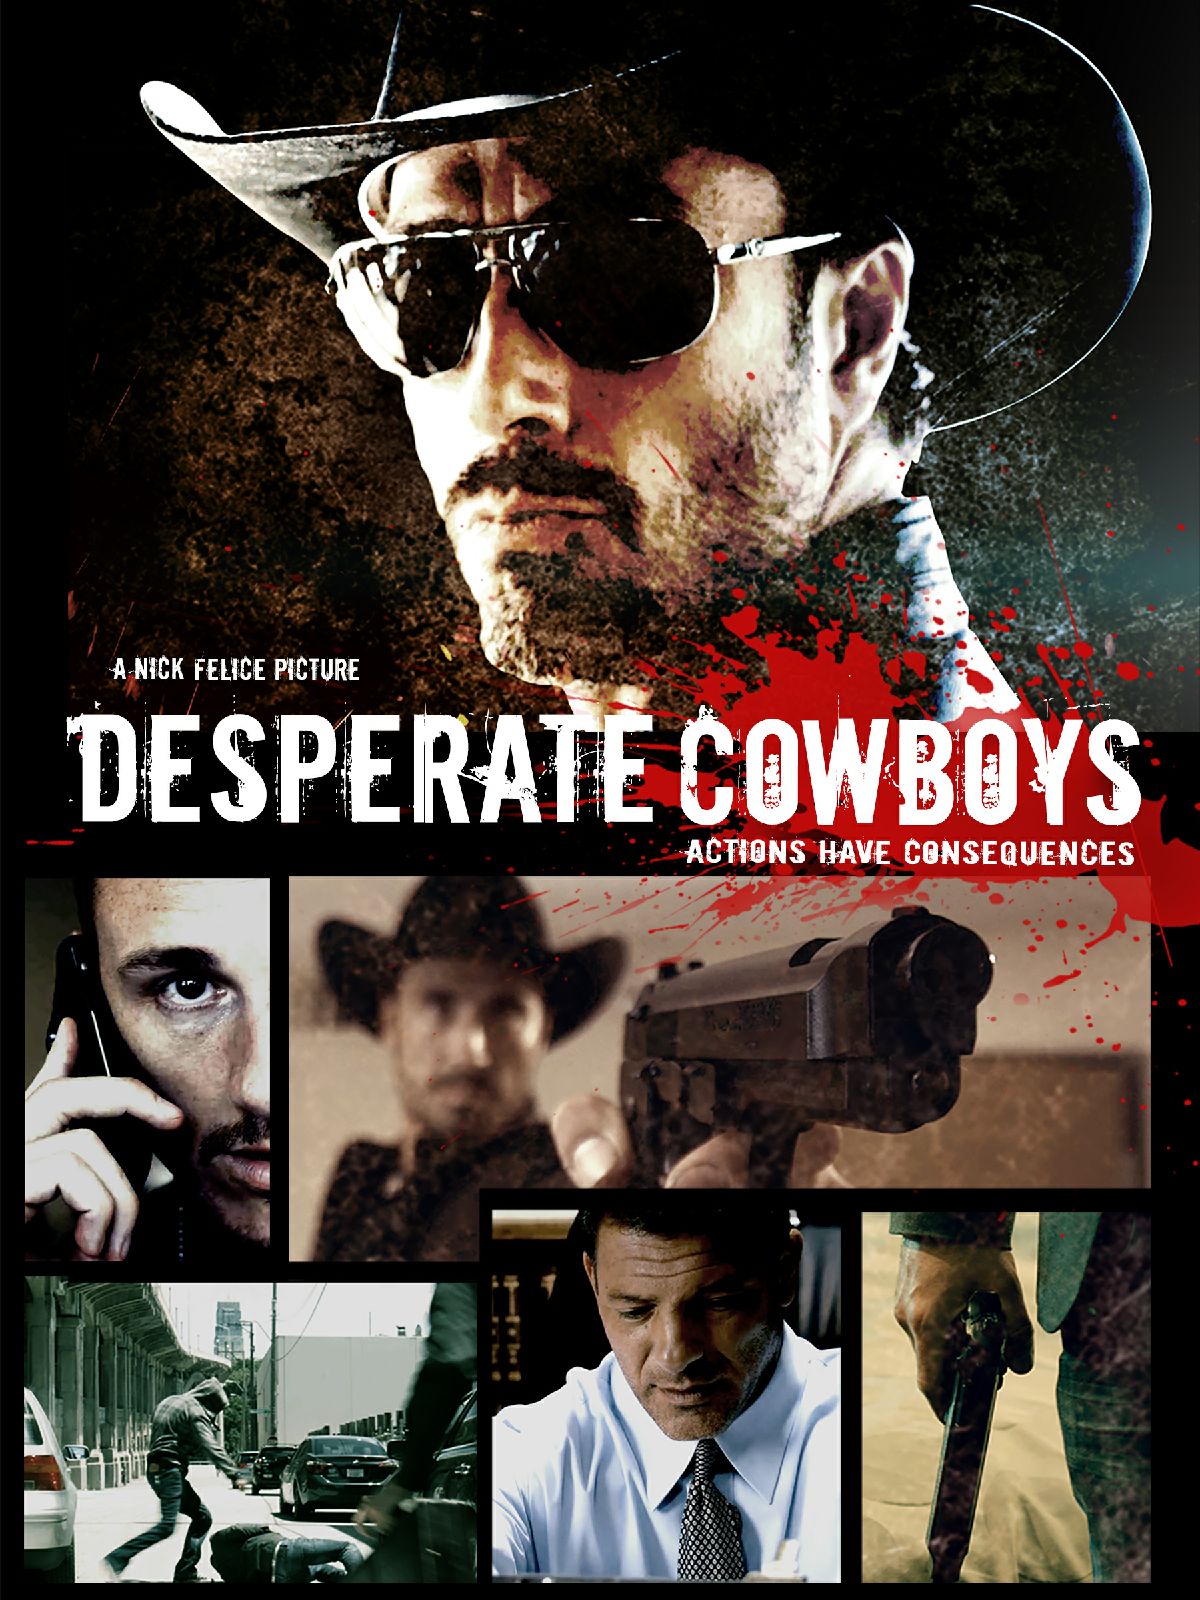 Nonton film Desperate Cowboys layarkaca21 indoxx1 ganool online streaming terbaru